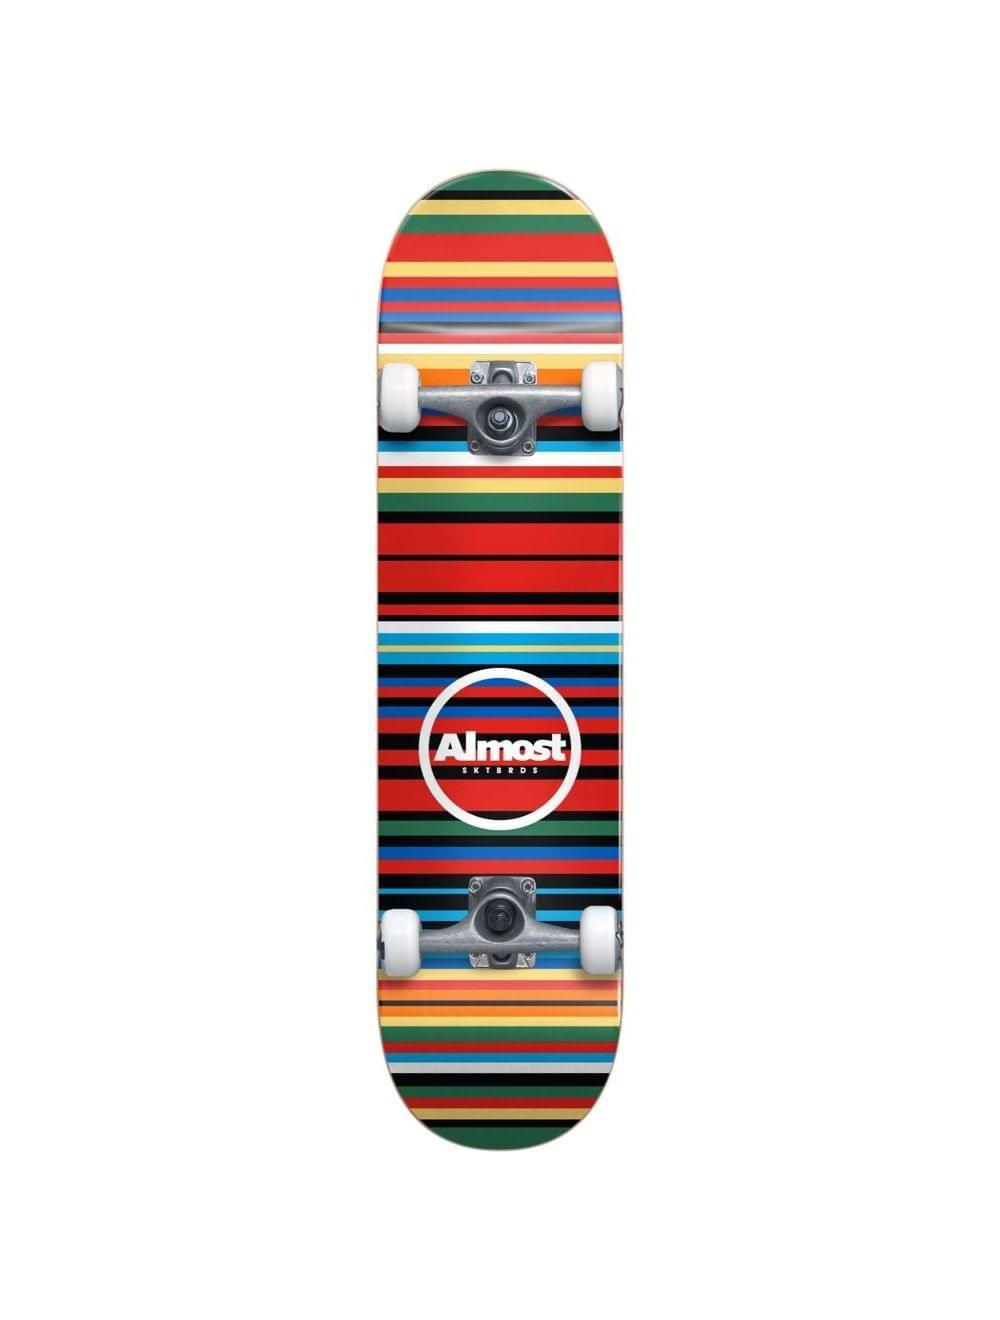 Almost Thin Strips Fp Complete | Almost Skateboards | Skate Shop | Tablas, Ejes, Ruedas,... | Skates Completos | surfdevils.com